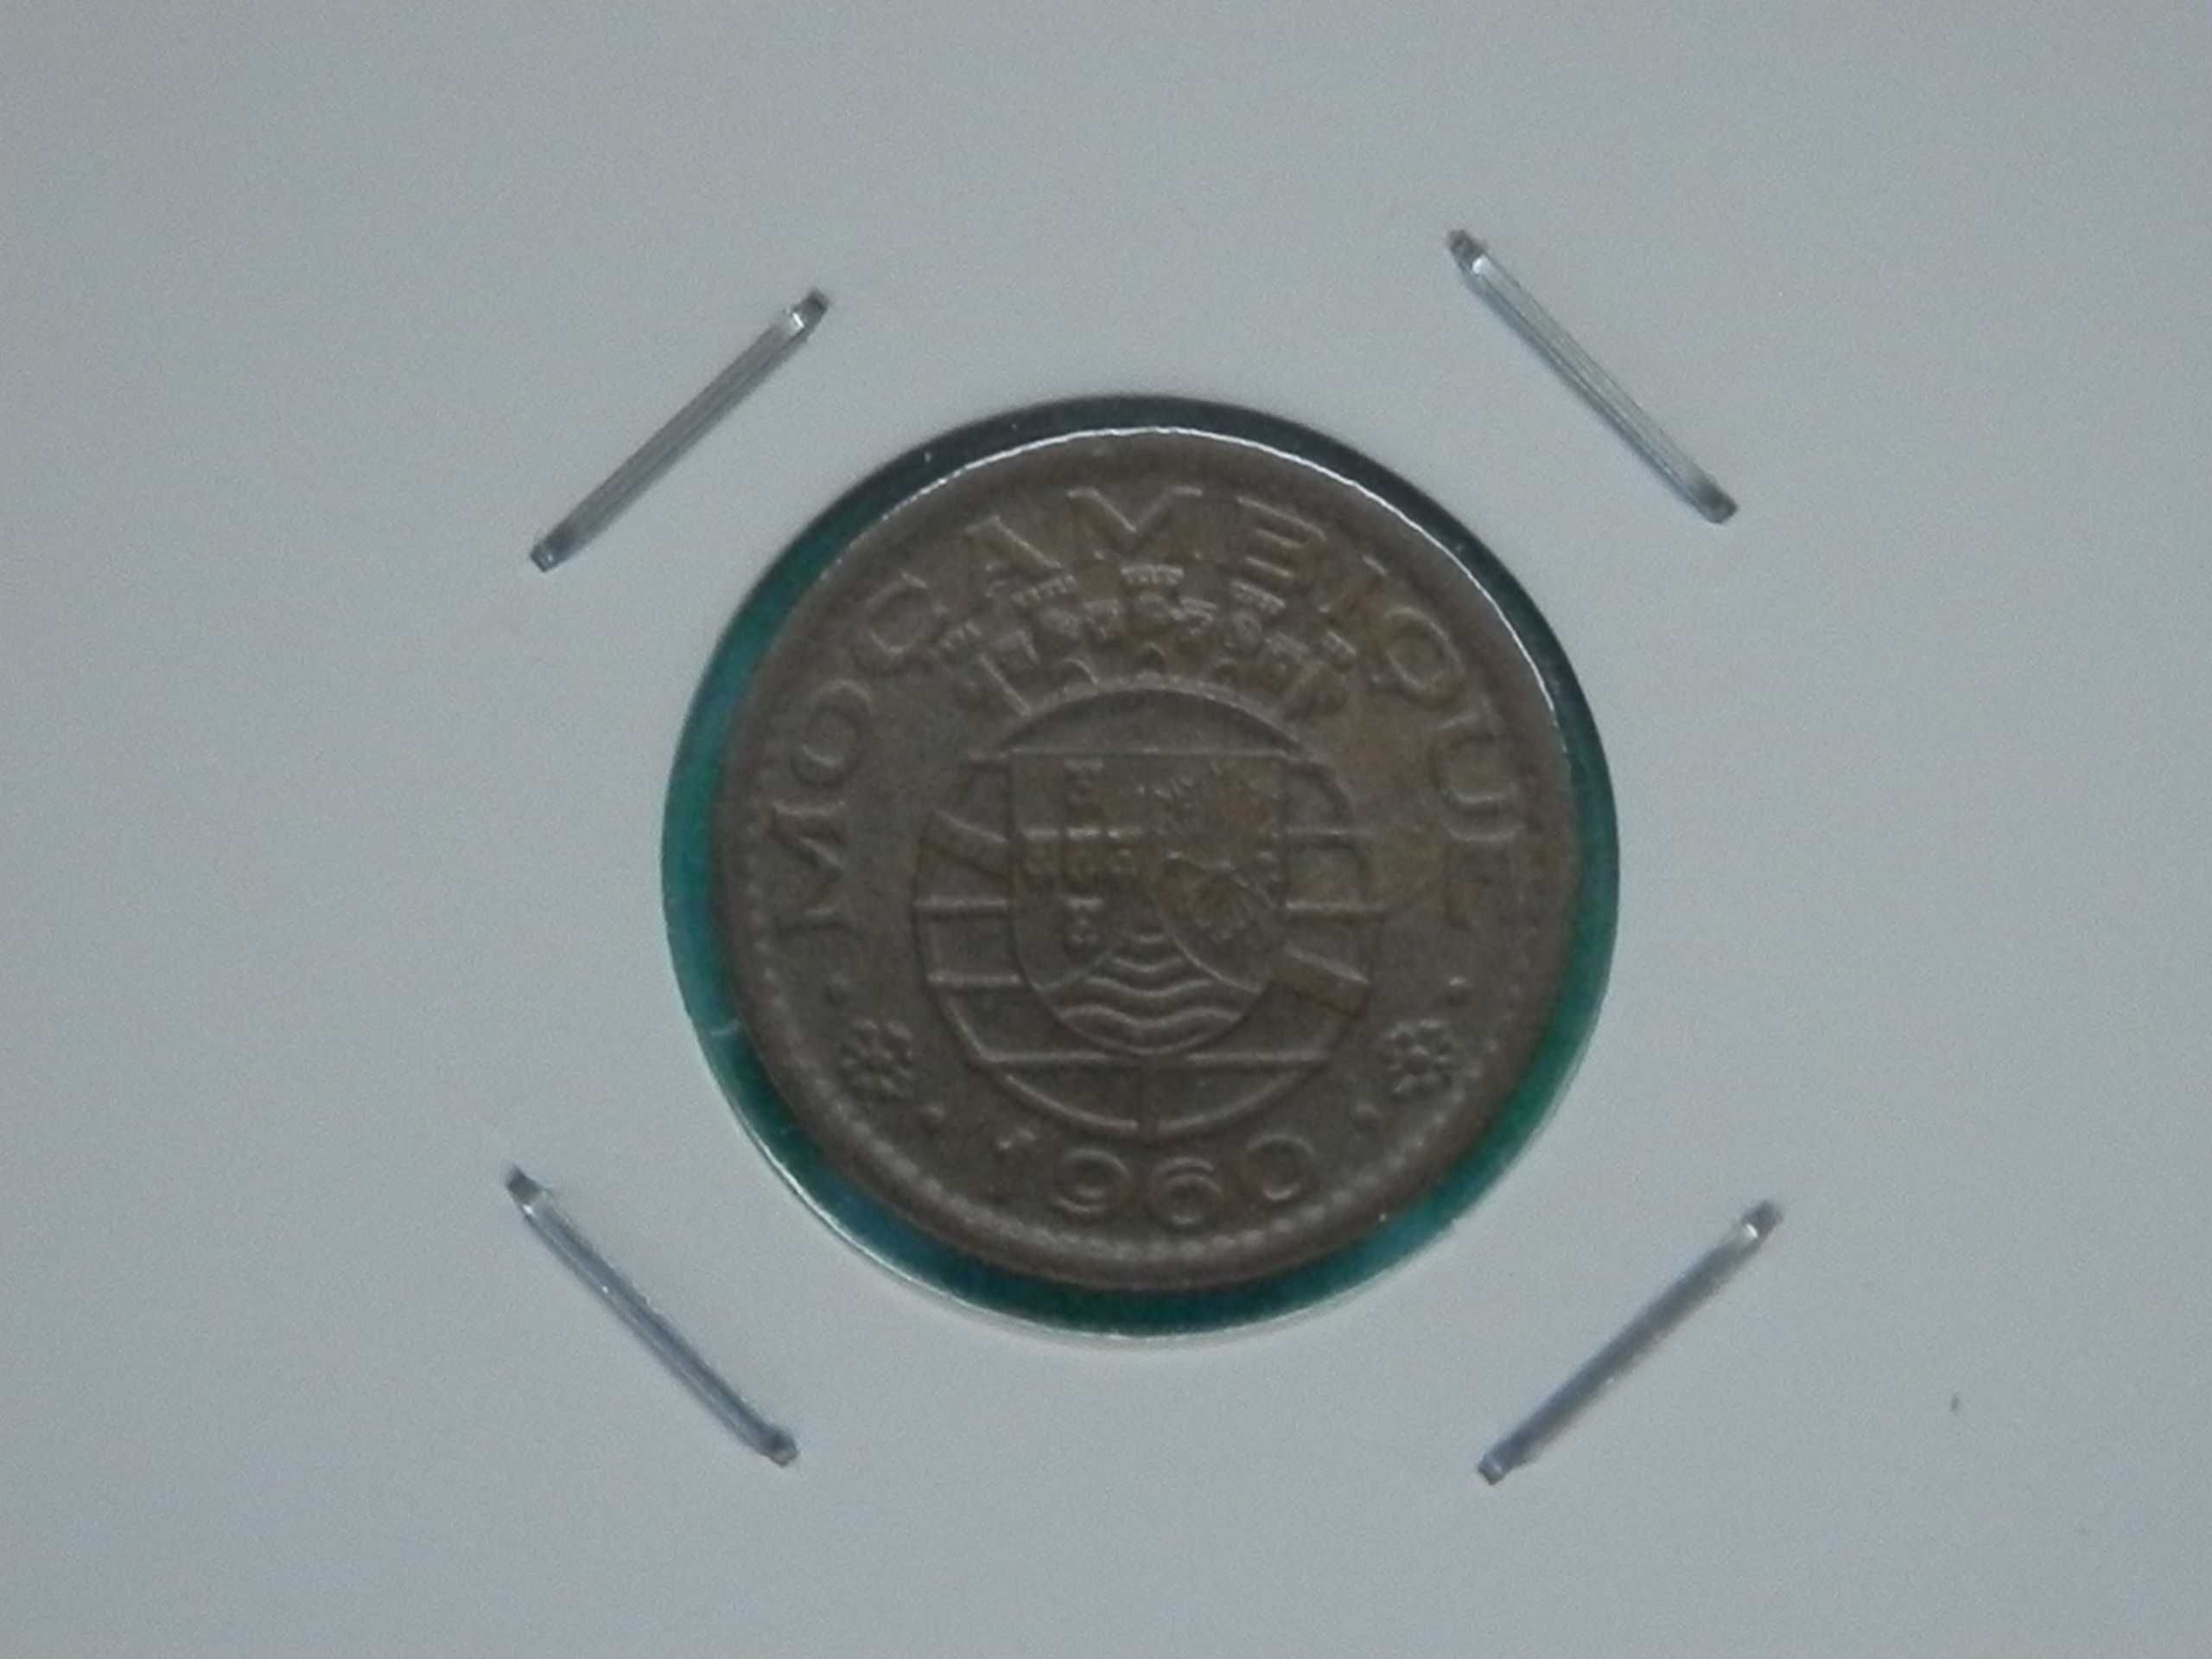 489 - Moçambique: 10 centavos 1960 bronze, por 1,00